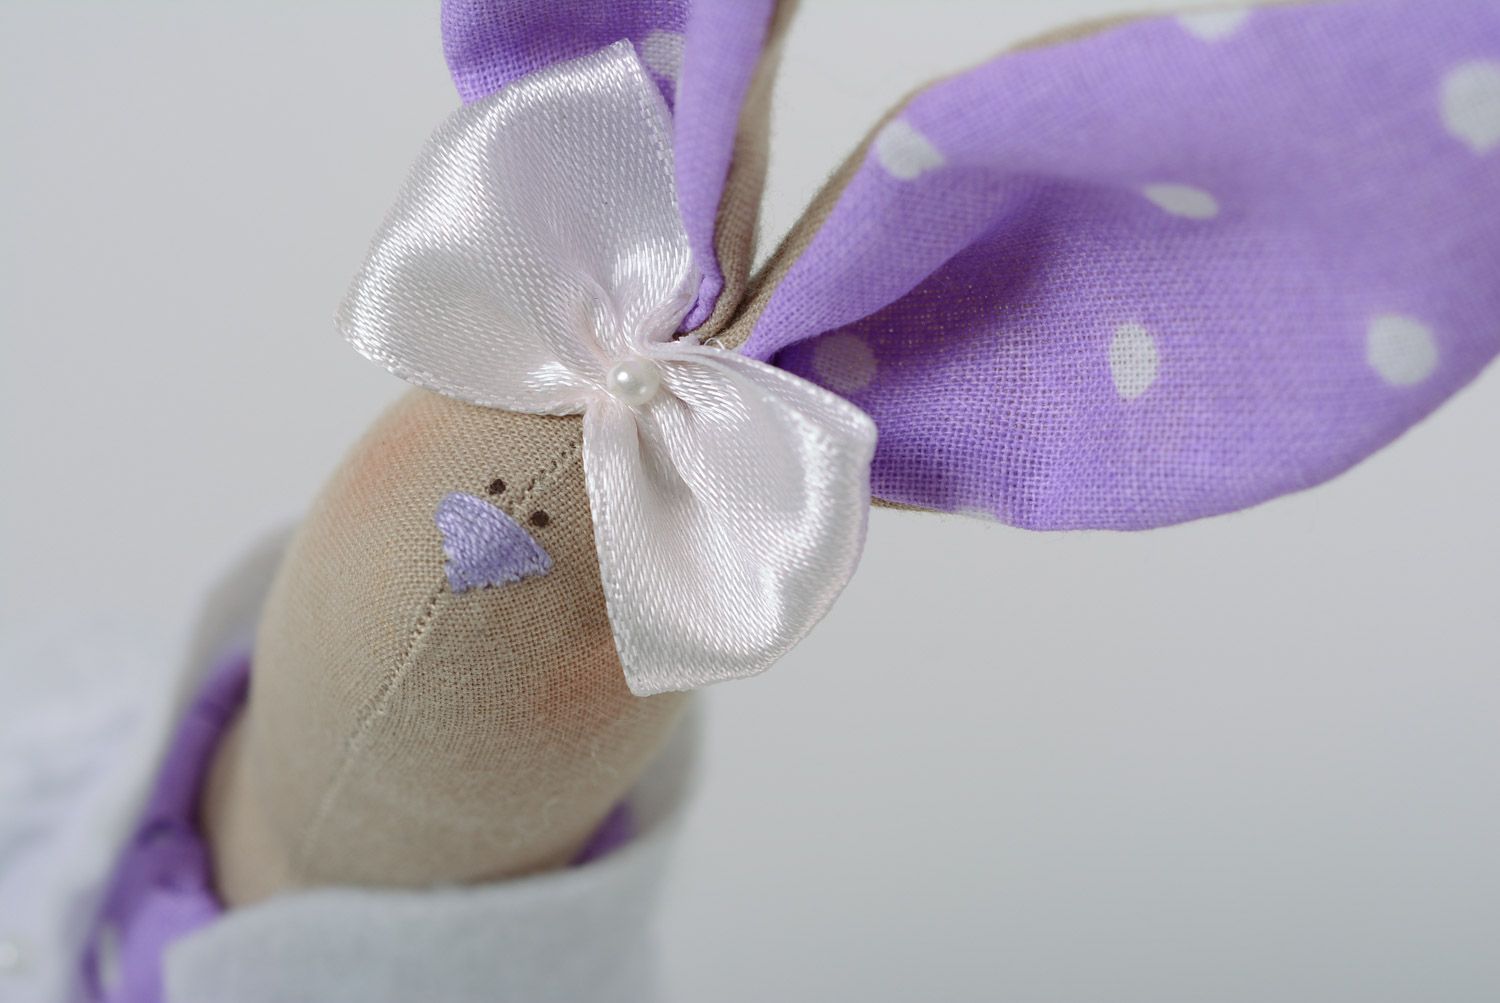 Beau jouet mou fait main lapin en coton et jersey de couleur lilas décor maison photo 2